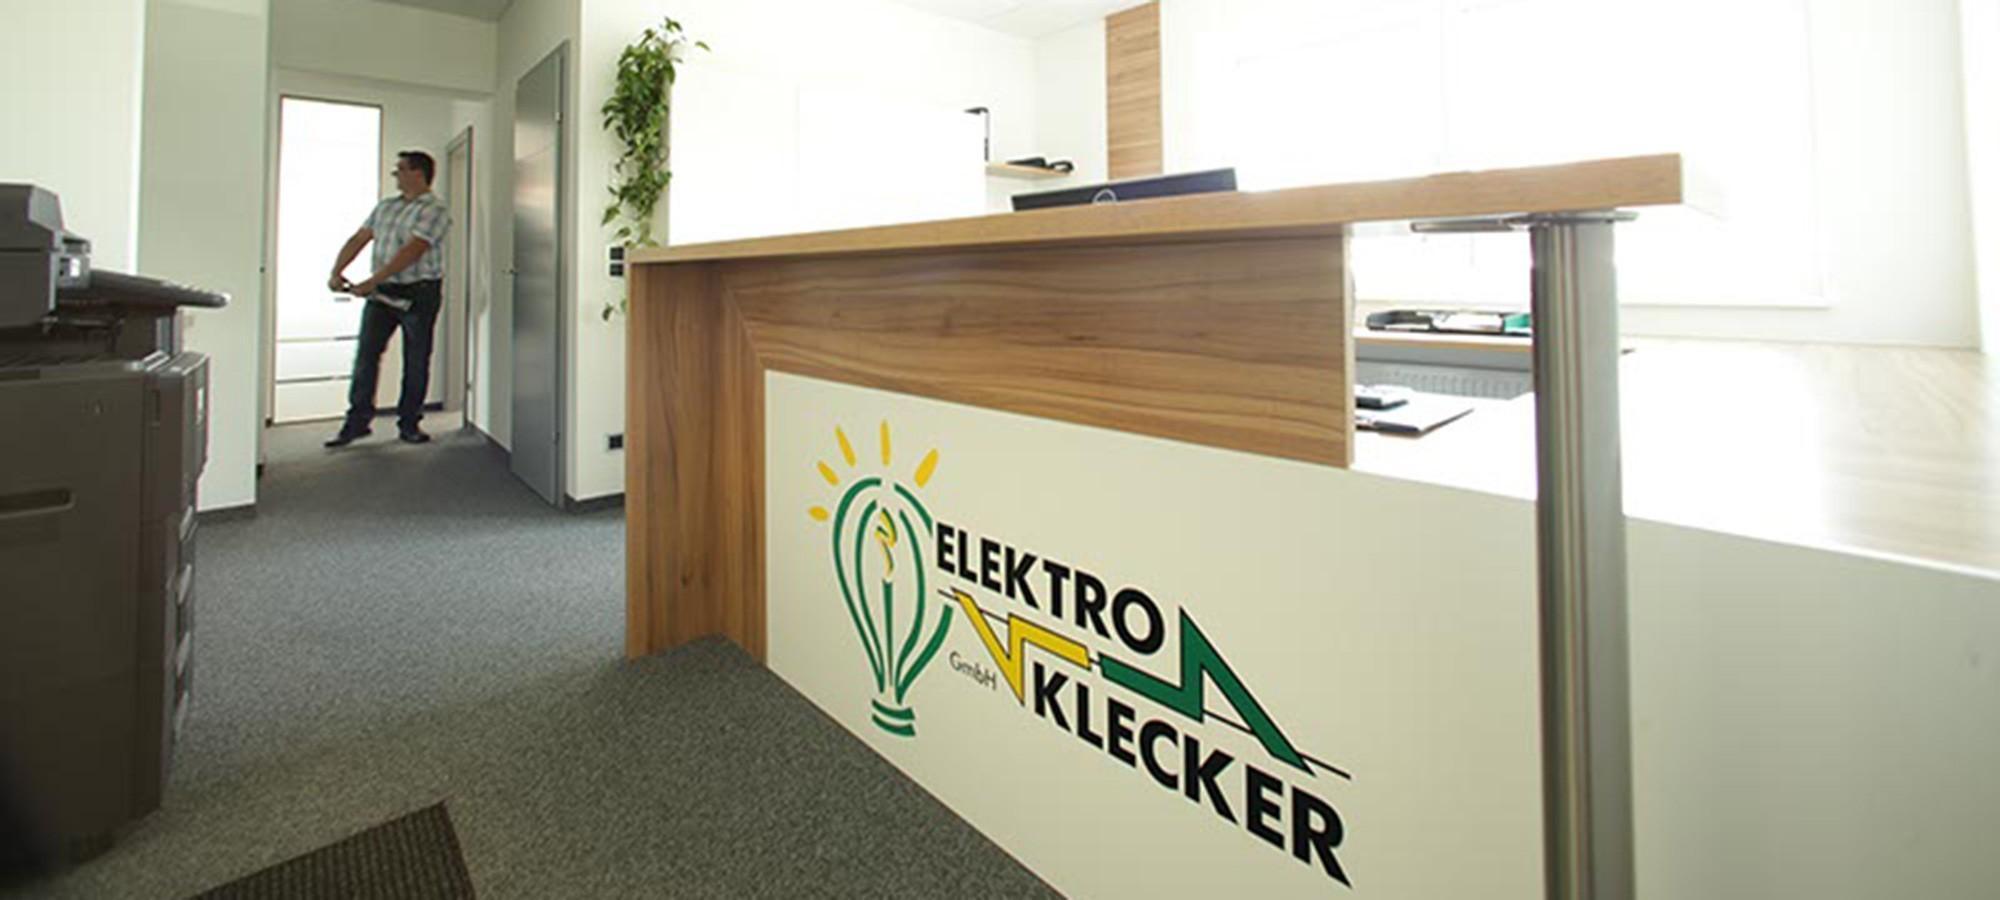 Vorschau - Foto 1 von Elektro-Klecker GmbH